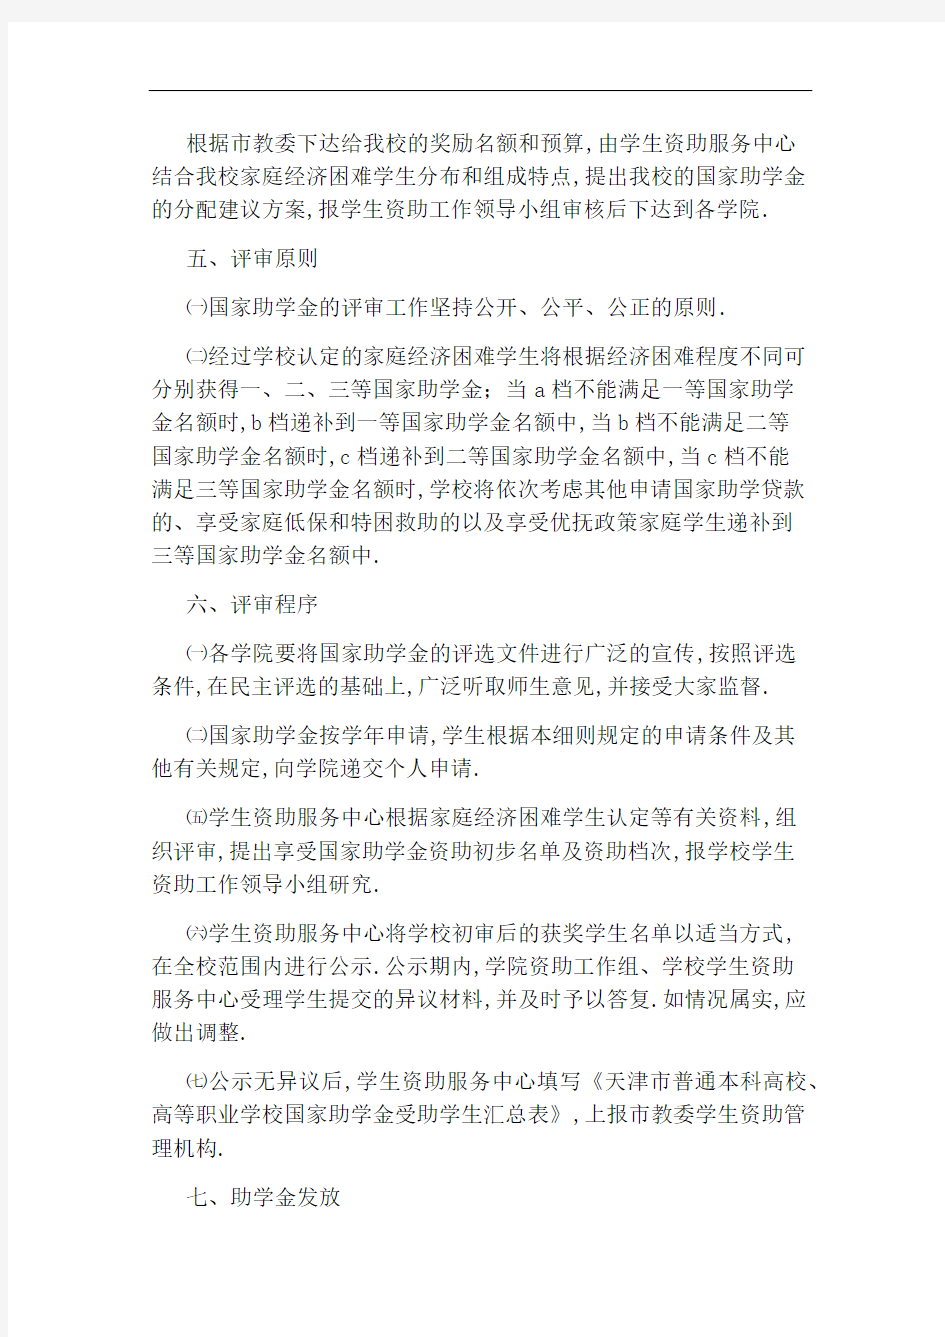 天津工业大学国家助学金管理规定实施细则